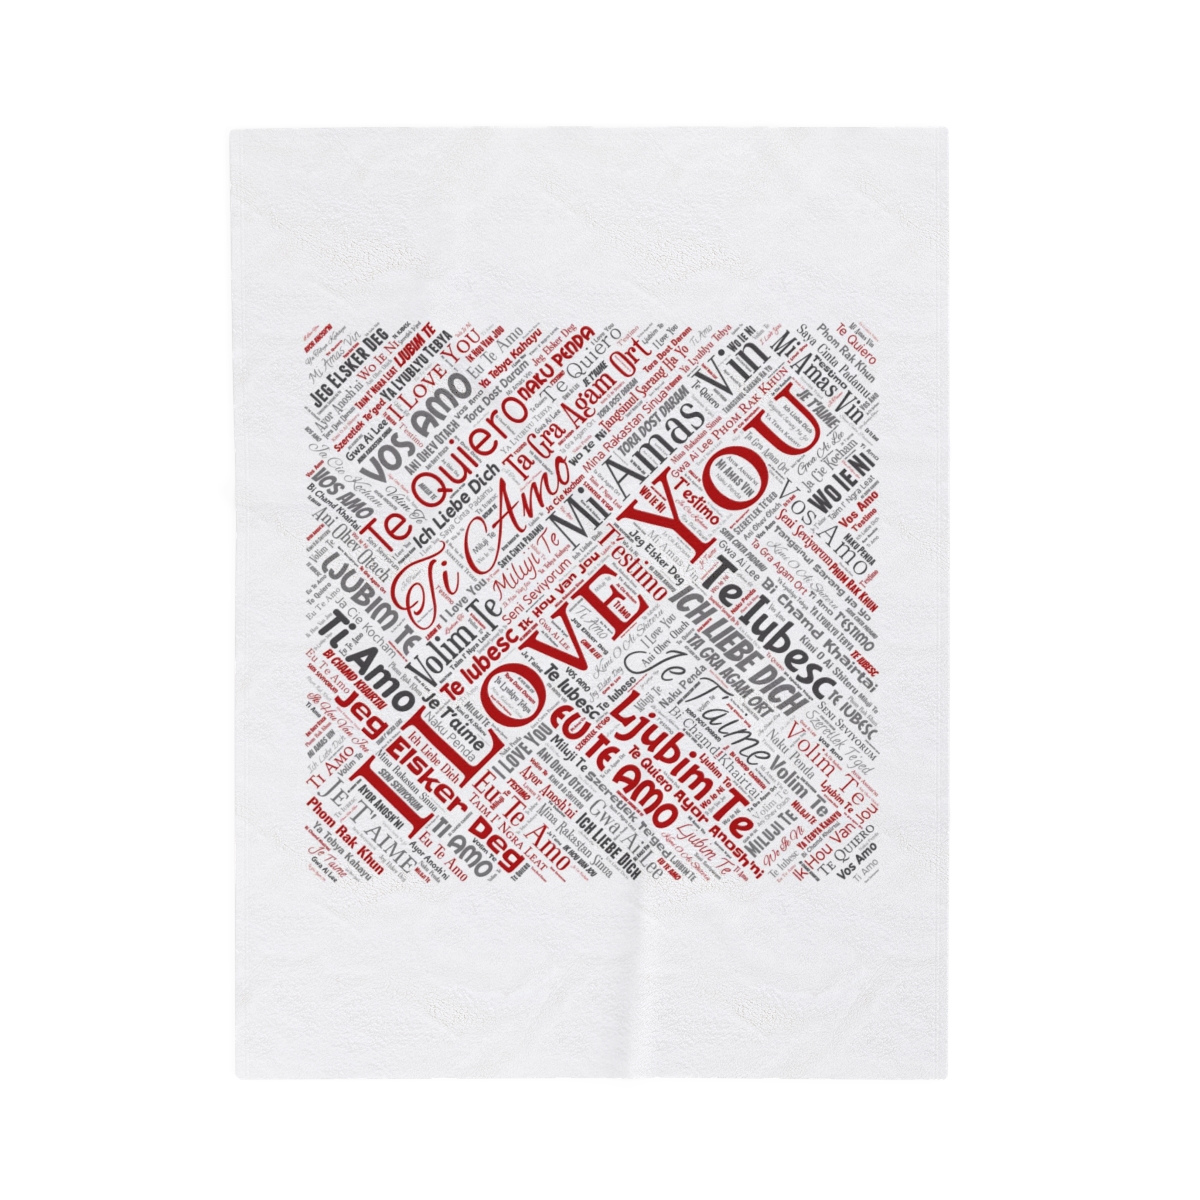 I love you - 100 language blanket product thumbnail image